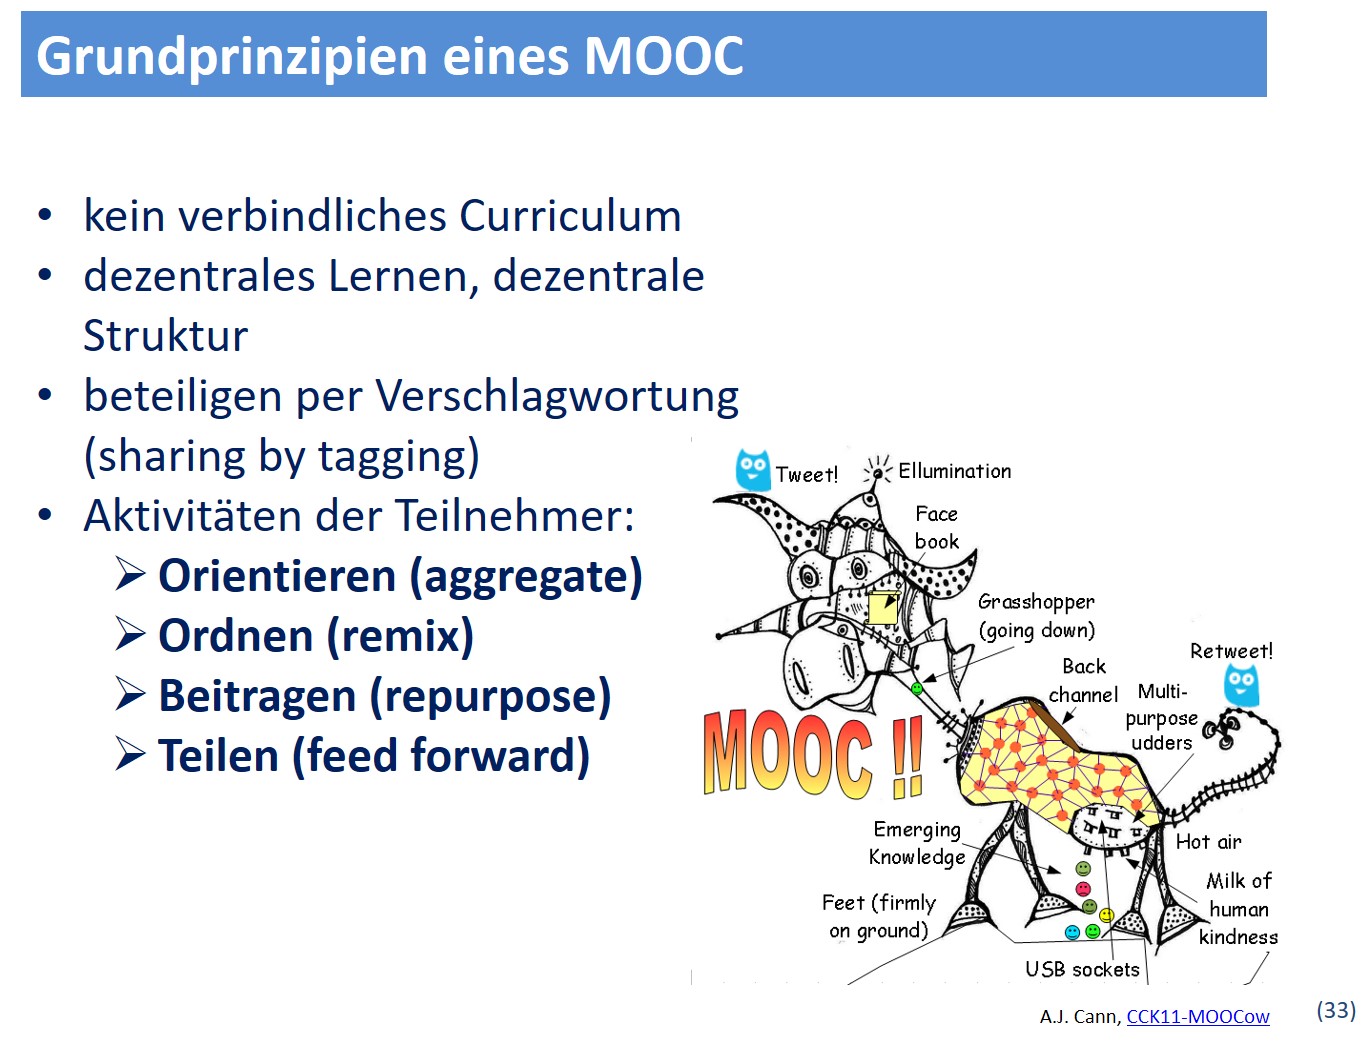 Grundprinzipien cMOOC - Persönliche Lernumgebung im Web gestalten - Wissensarbeit #cl2025